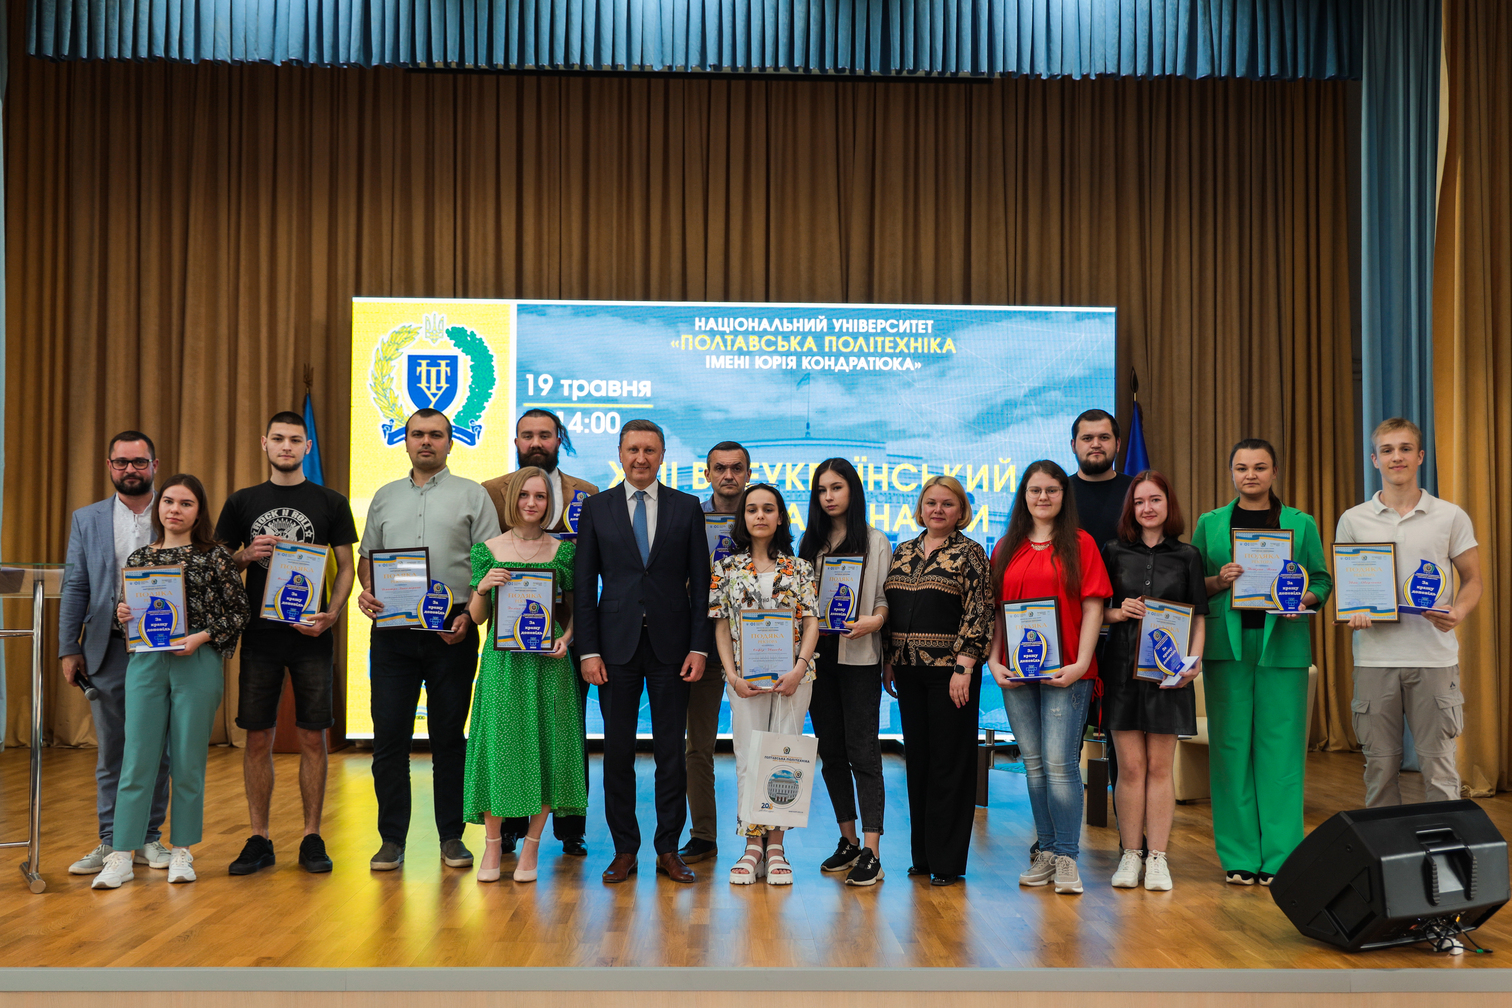 Студентську молодь Полтавської політехніки відзначили за вагомі науково-освітні досягнення та участь у Фестивалі науки 